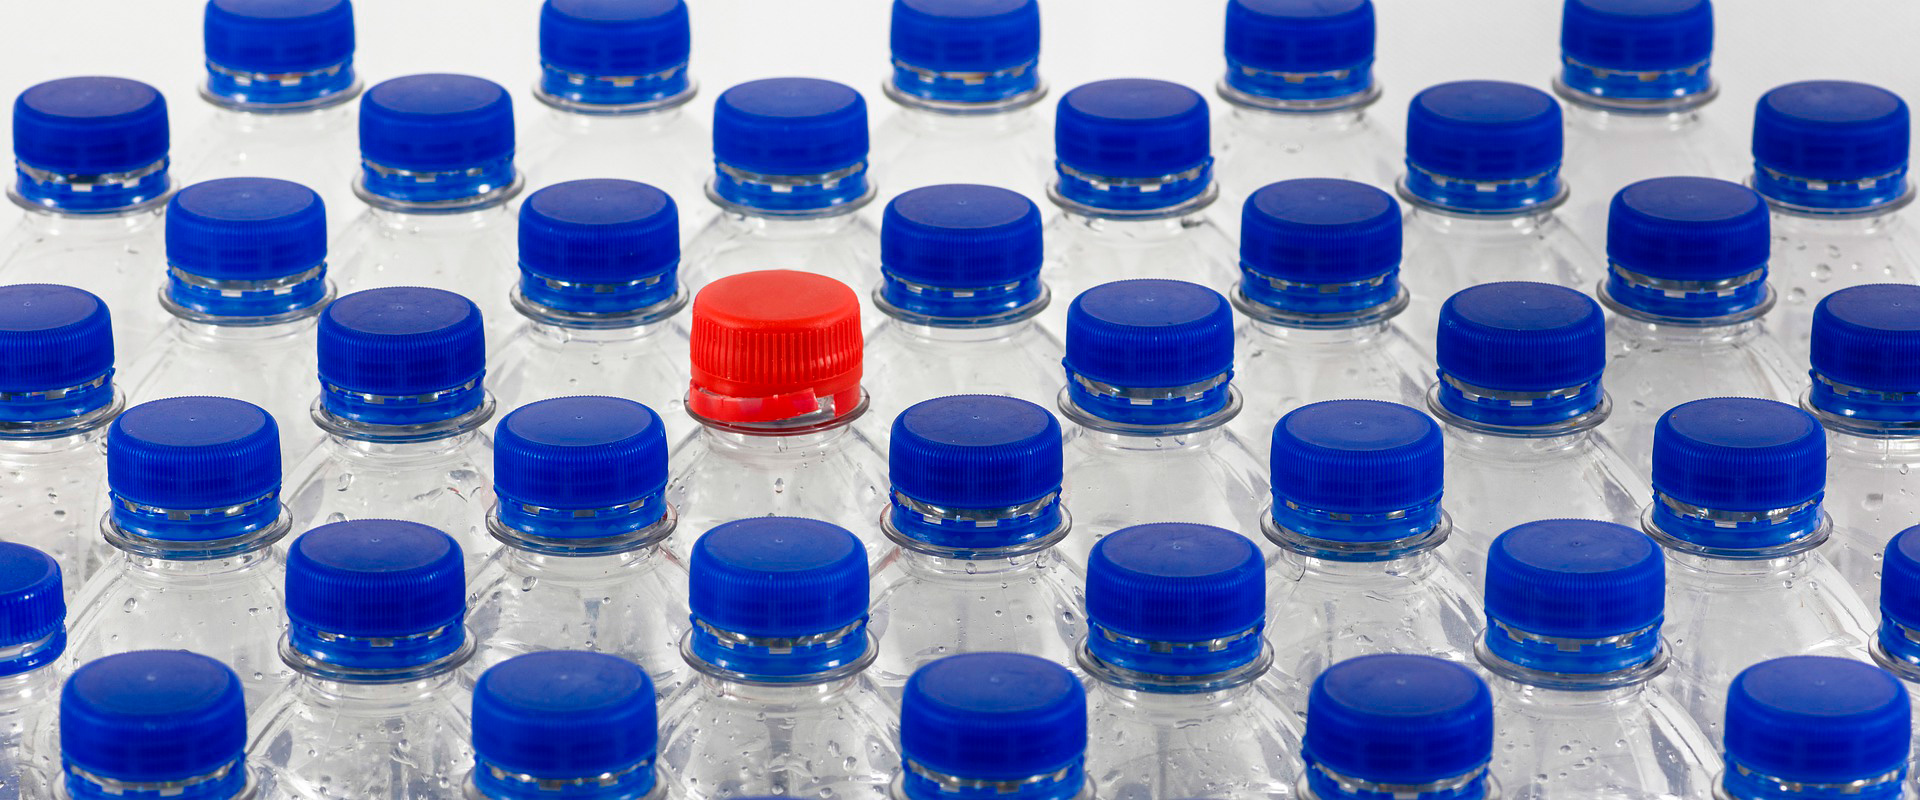 Bouteilles PET avec bouchon rouge entre plusieurs bouteilles avec bouchons bleus